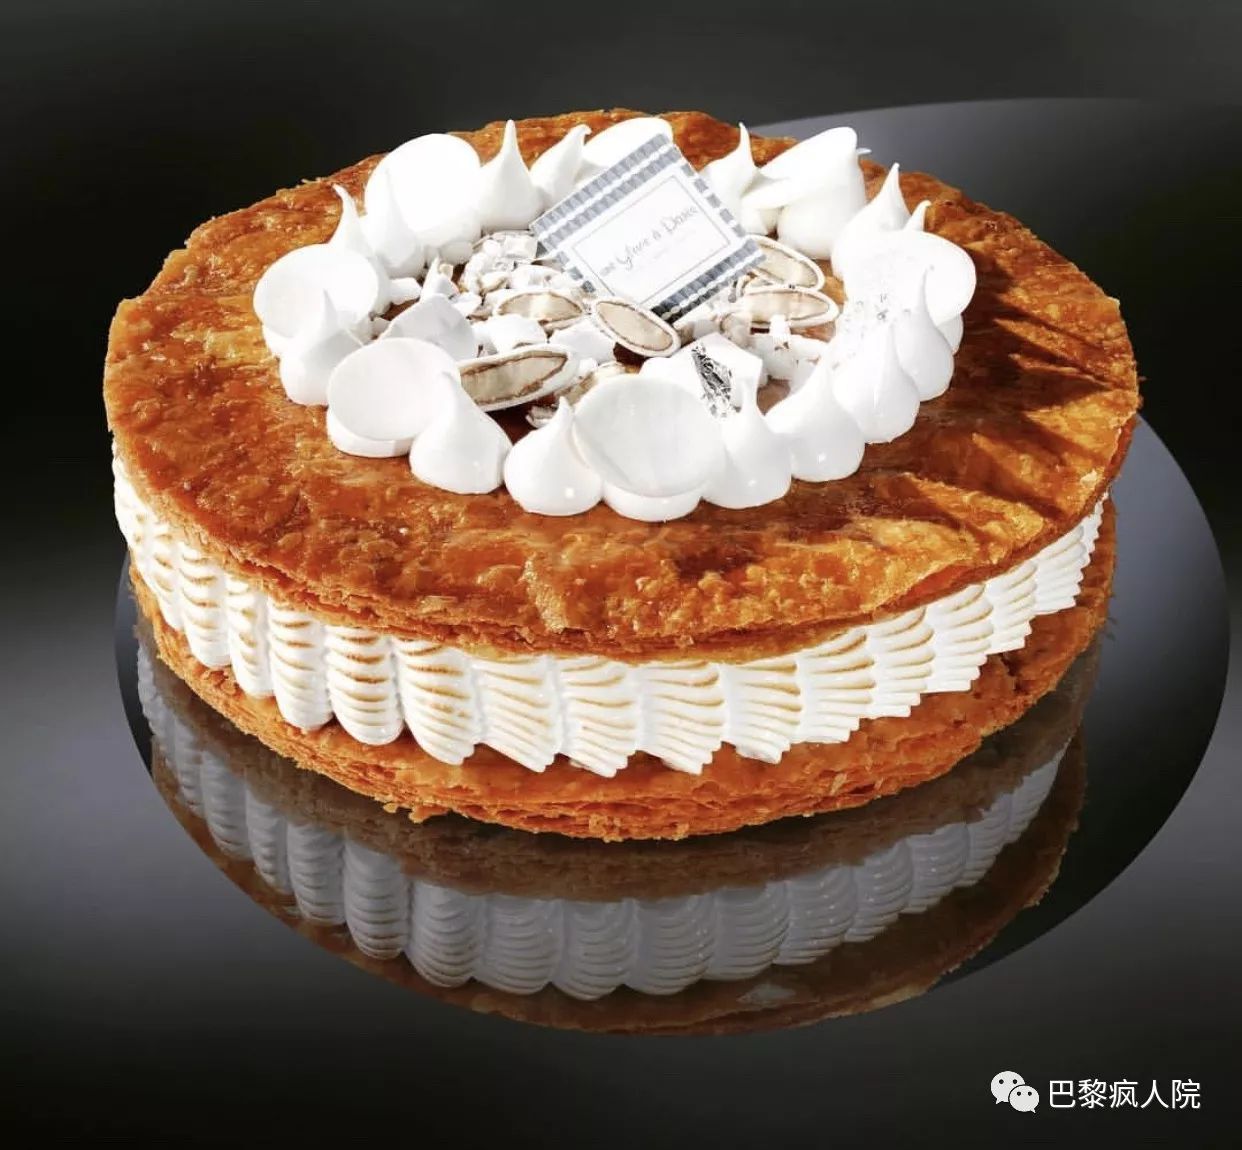 , 苦闷留学生活需要的仪式感｜推荐9款巴黎颜值最高的国王饼, My Crazy Paris